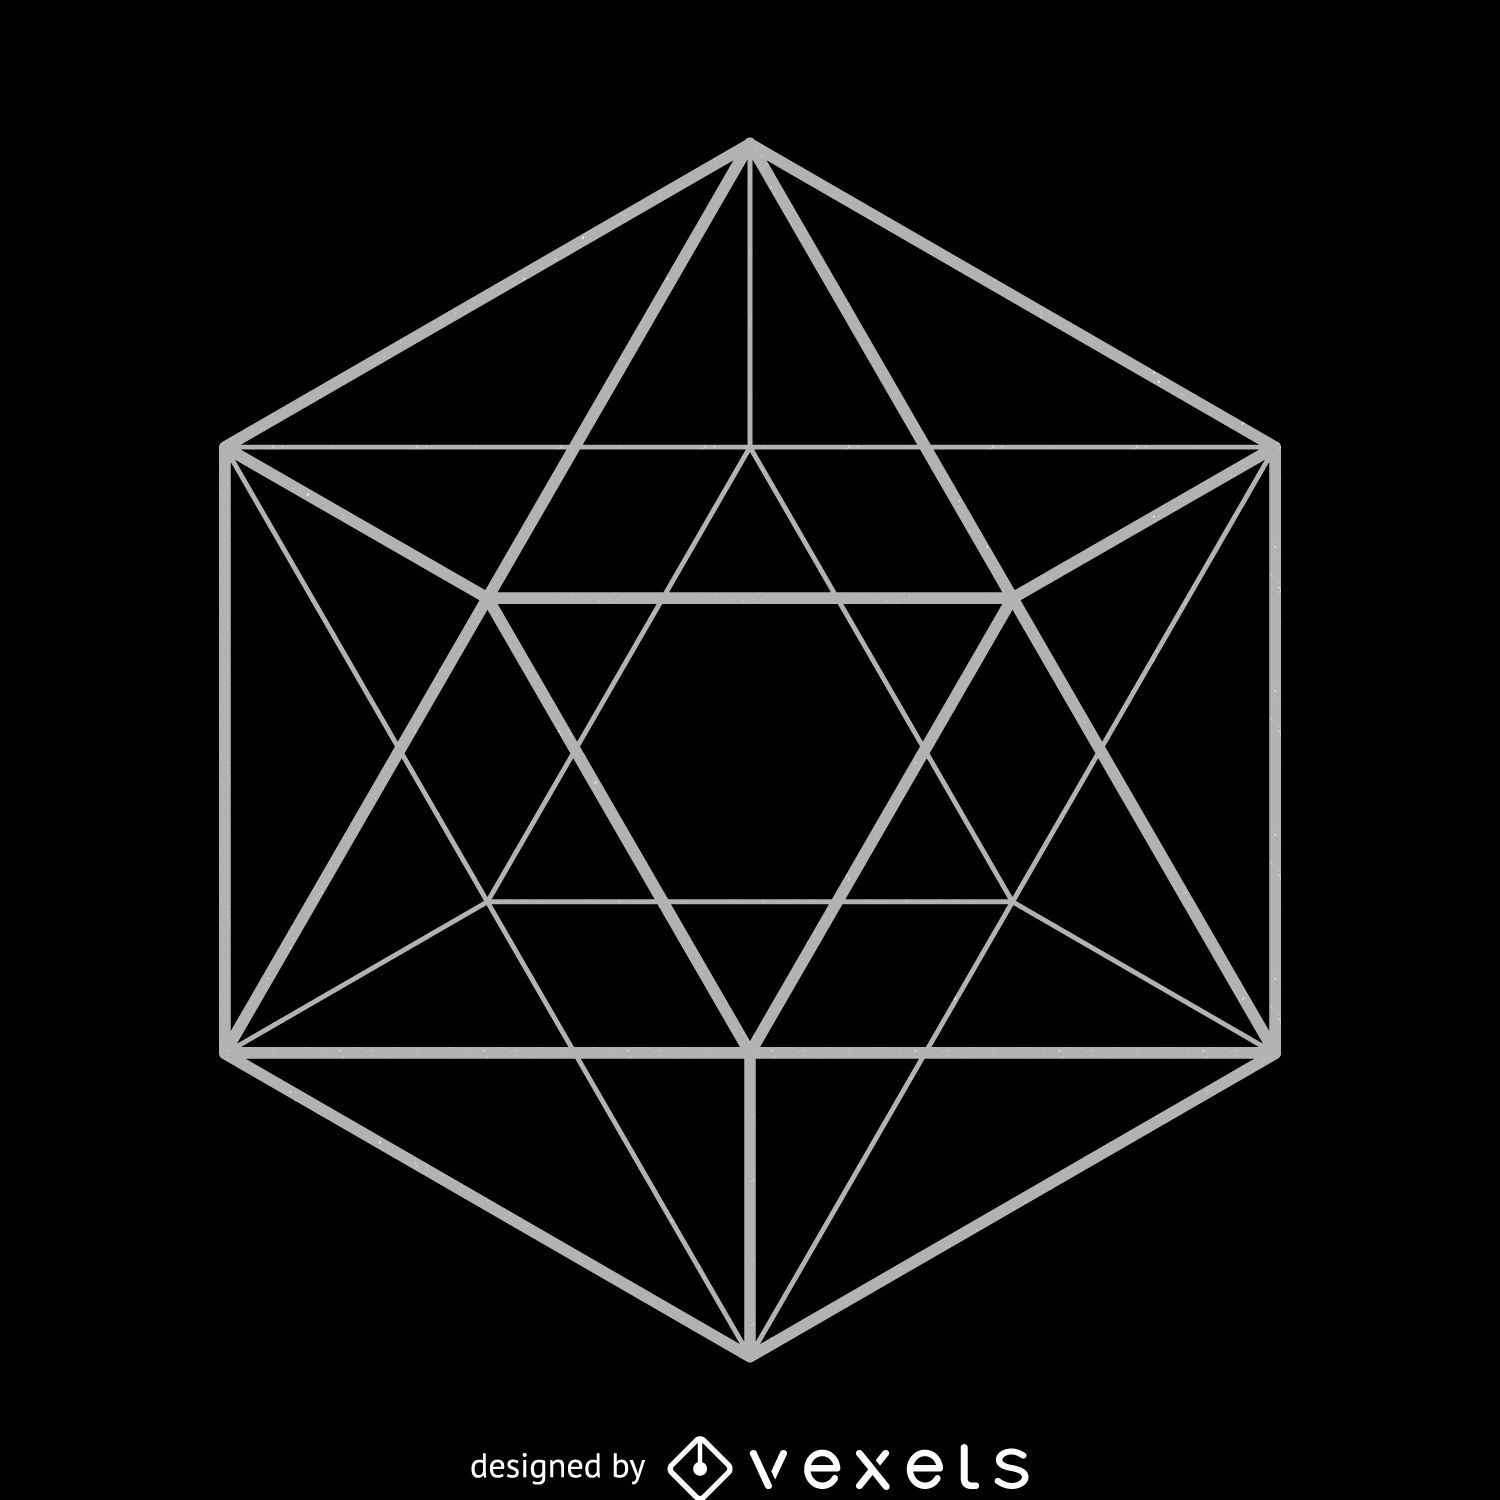 Diseño de geometría sagrada de icosaedro